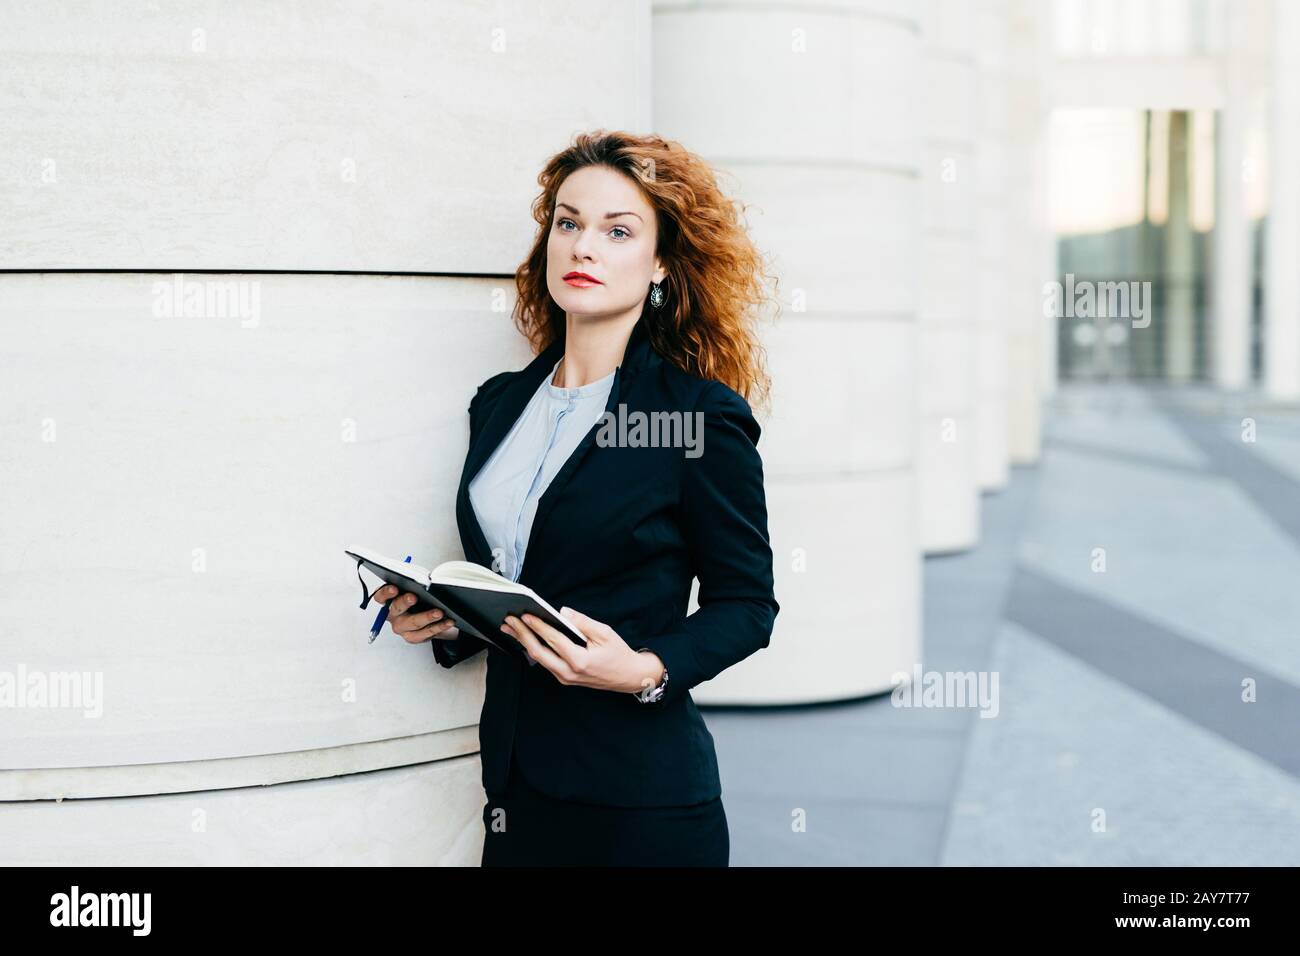 Hübsche junge Geschäftsfrau, die schwarze Jacke, Rock und weiße Bluse trägt, ihr Taschenbuch mit Stift hält, Notizen schreibt oder nach Ersatztagen sucht Stockfoto